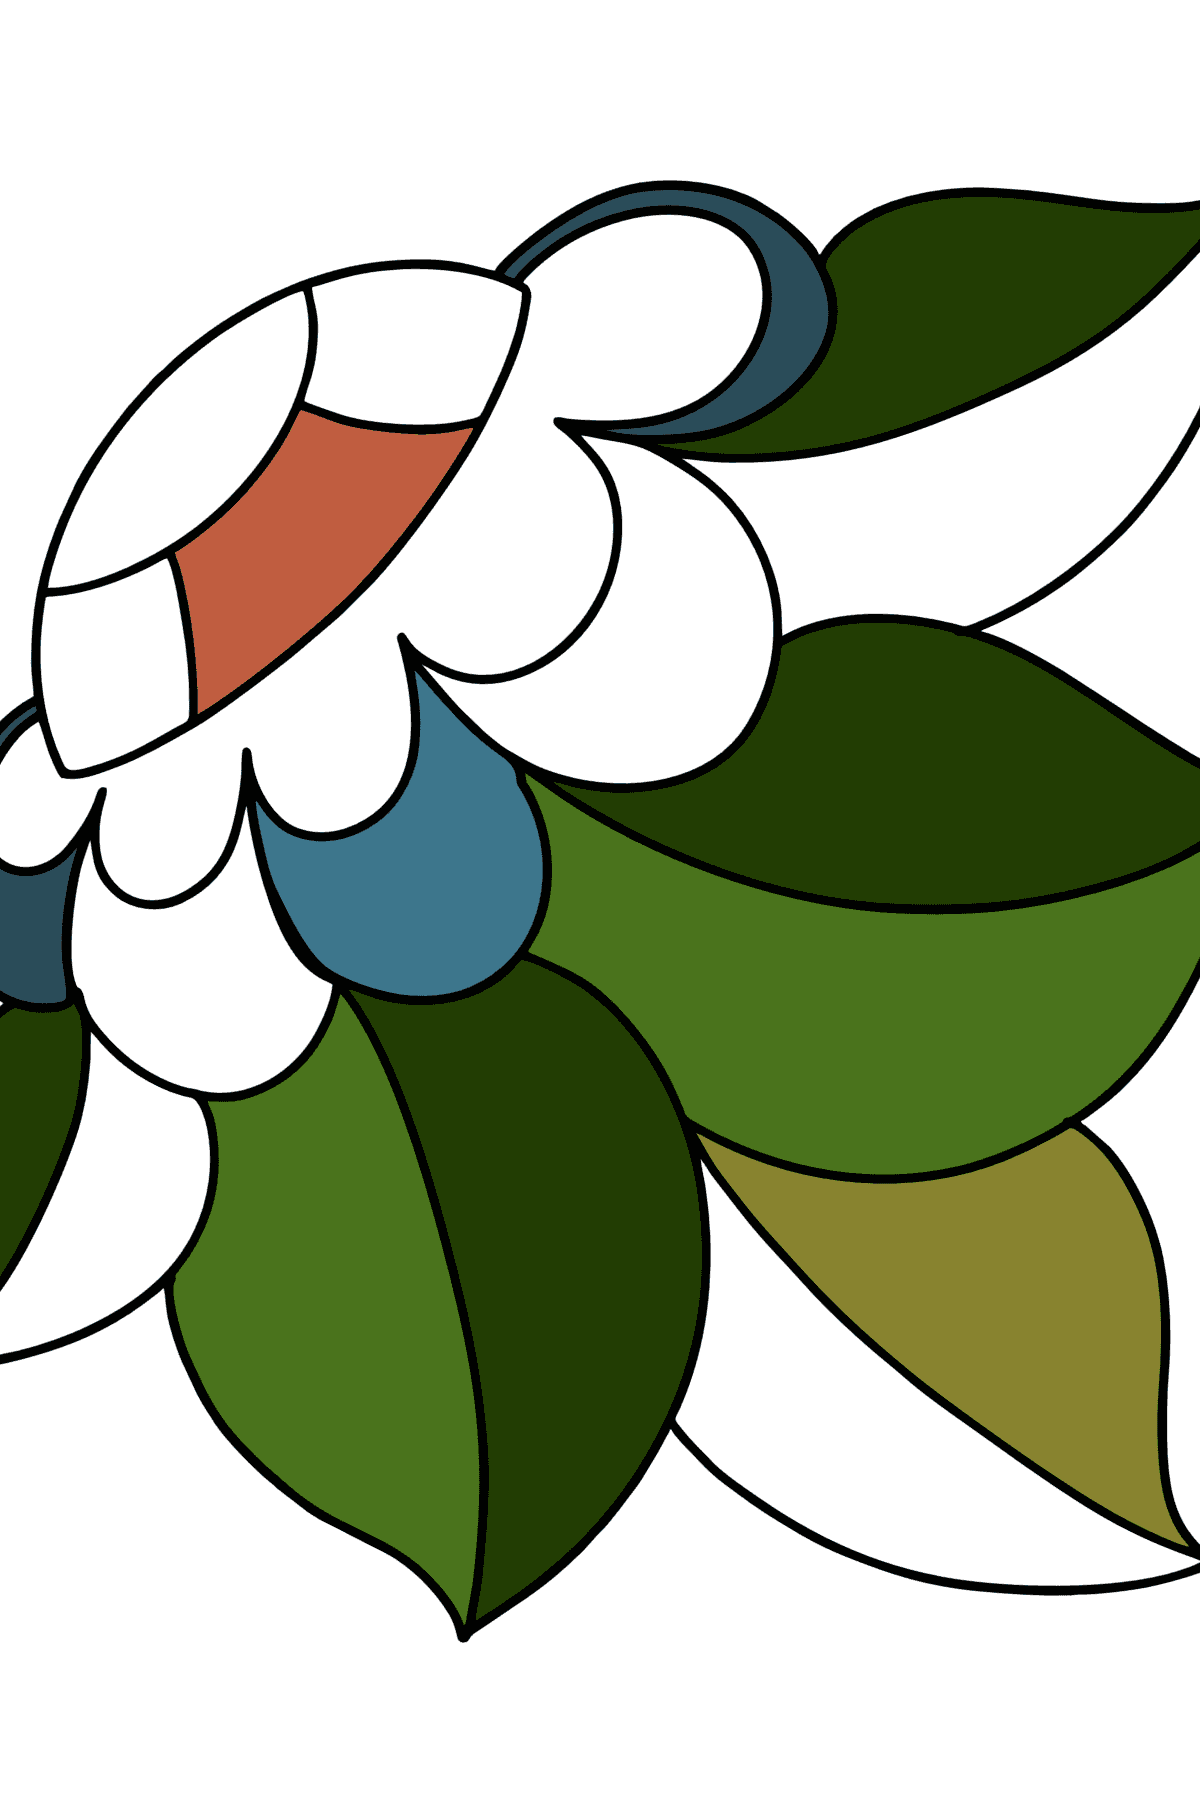 Coloriages Zentangle Motif floral - Coloriages pour les Enfants